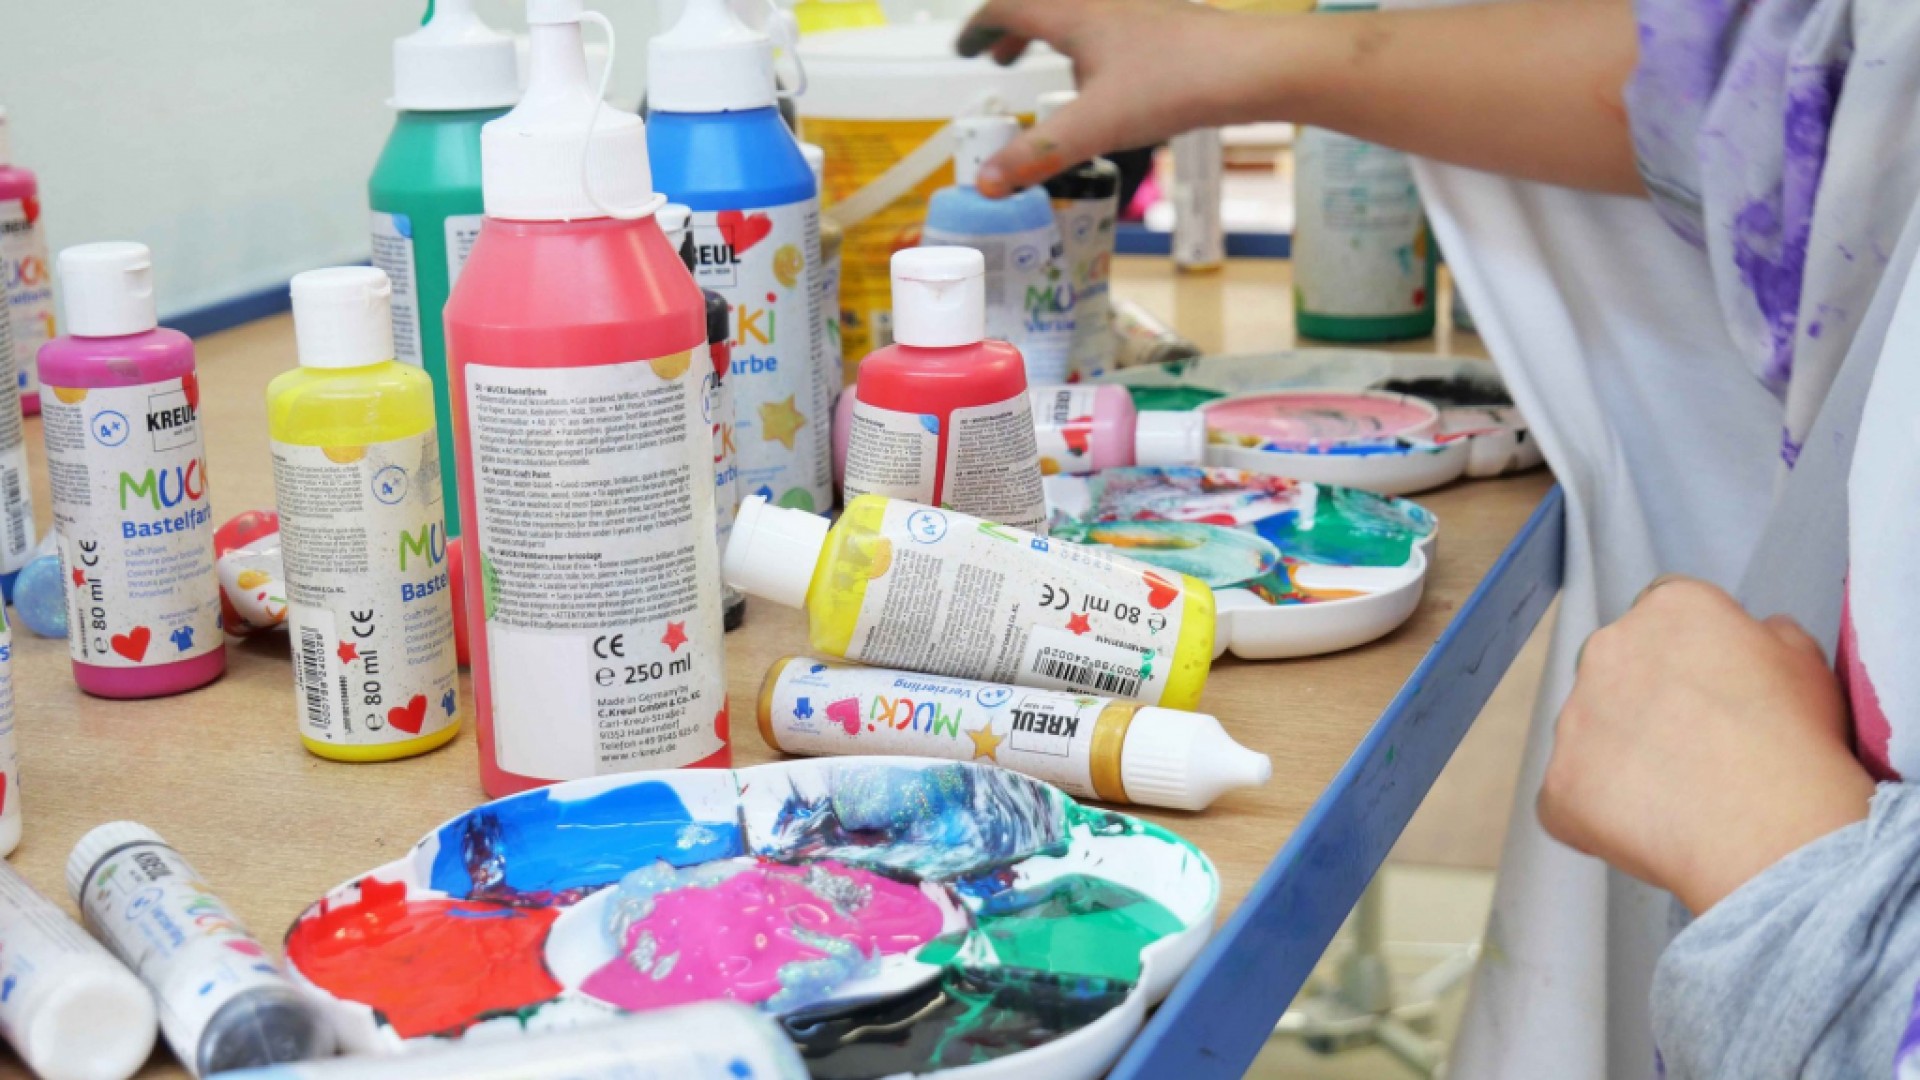 Nápady na kreativní aktivity s dětmi: Malování barvami MUCKI